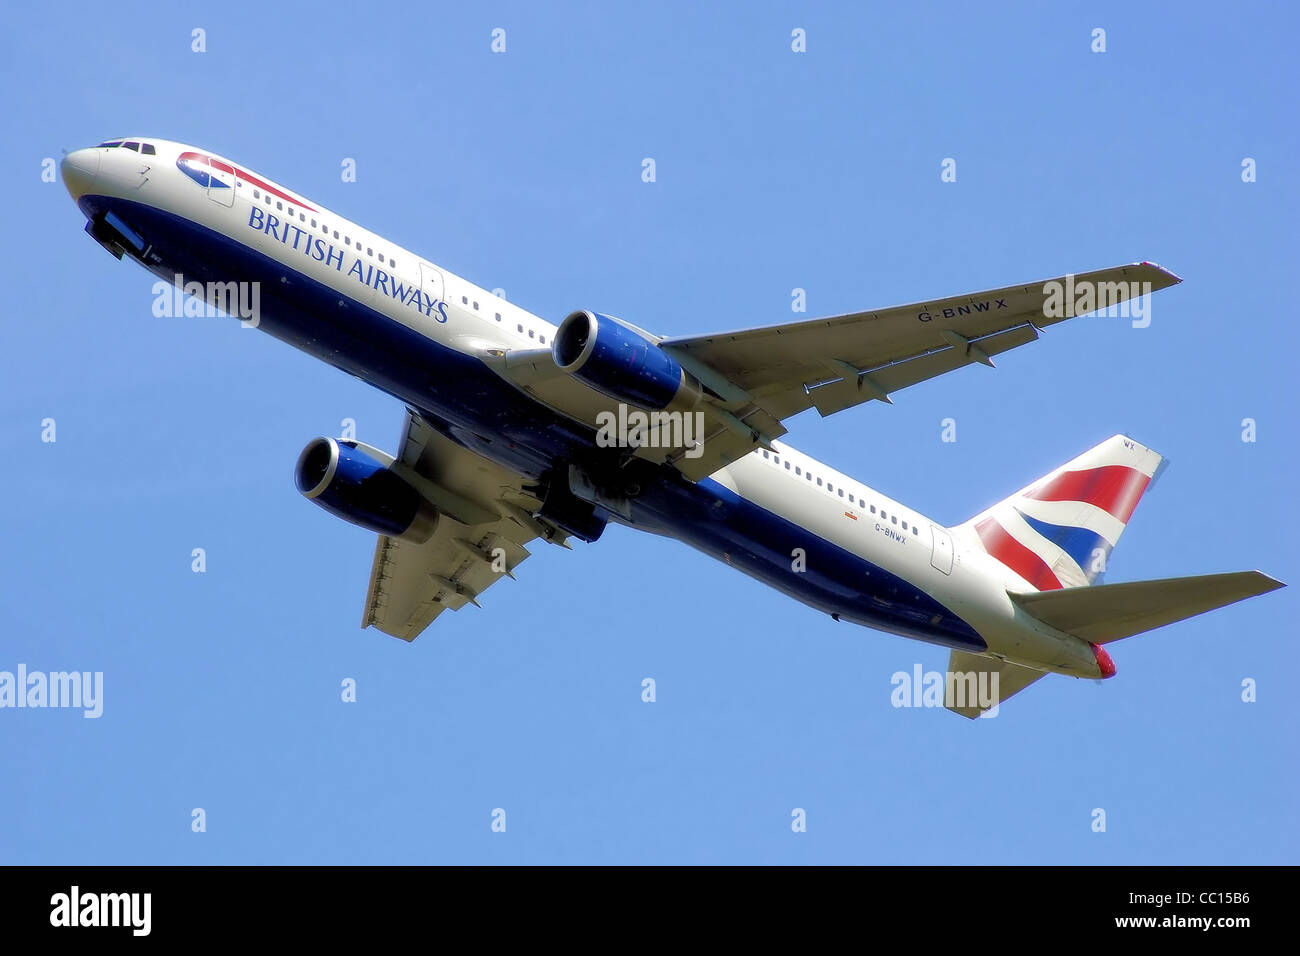 British Airways Boeing 767-300 (G-BNWX) startet vom Flughafen London Heathrow, England. Stockfoto